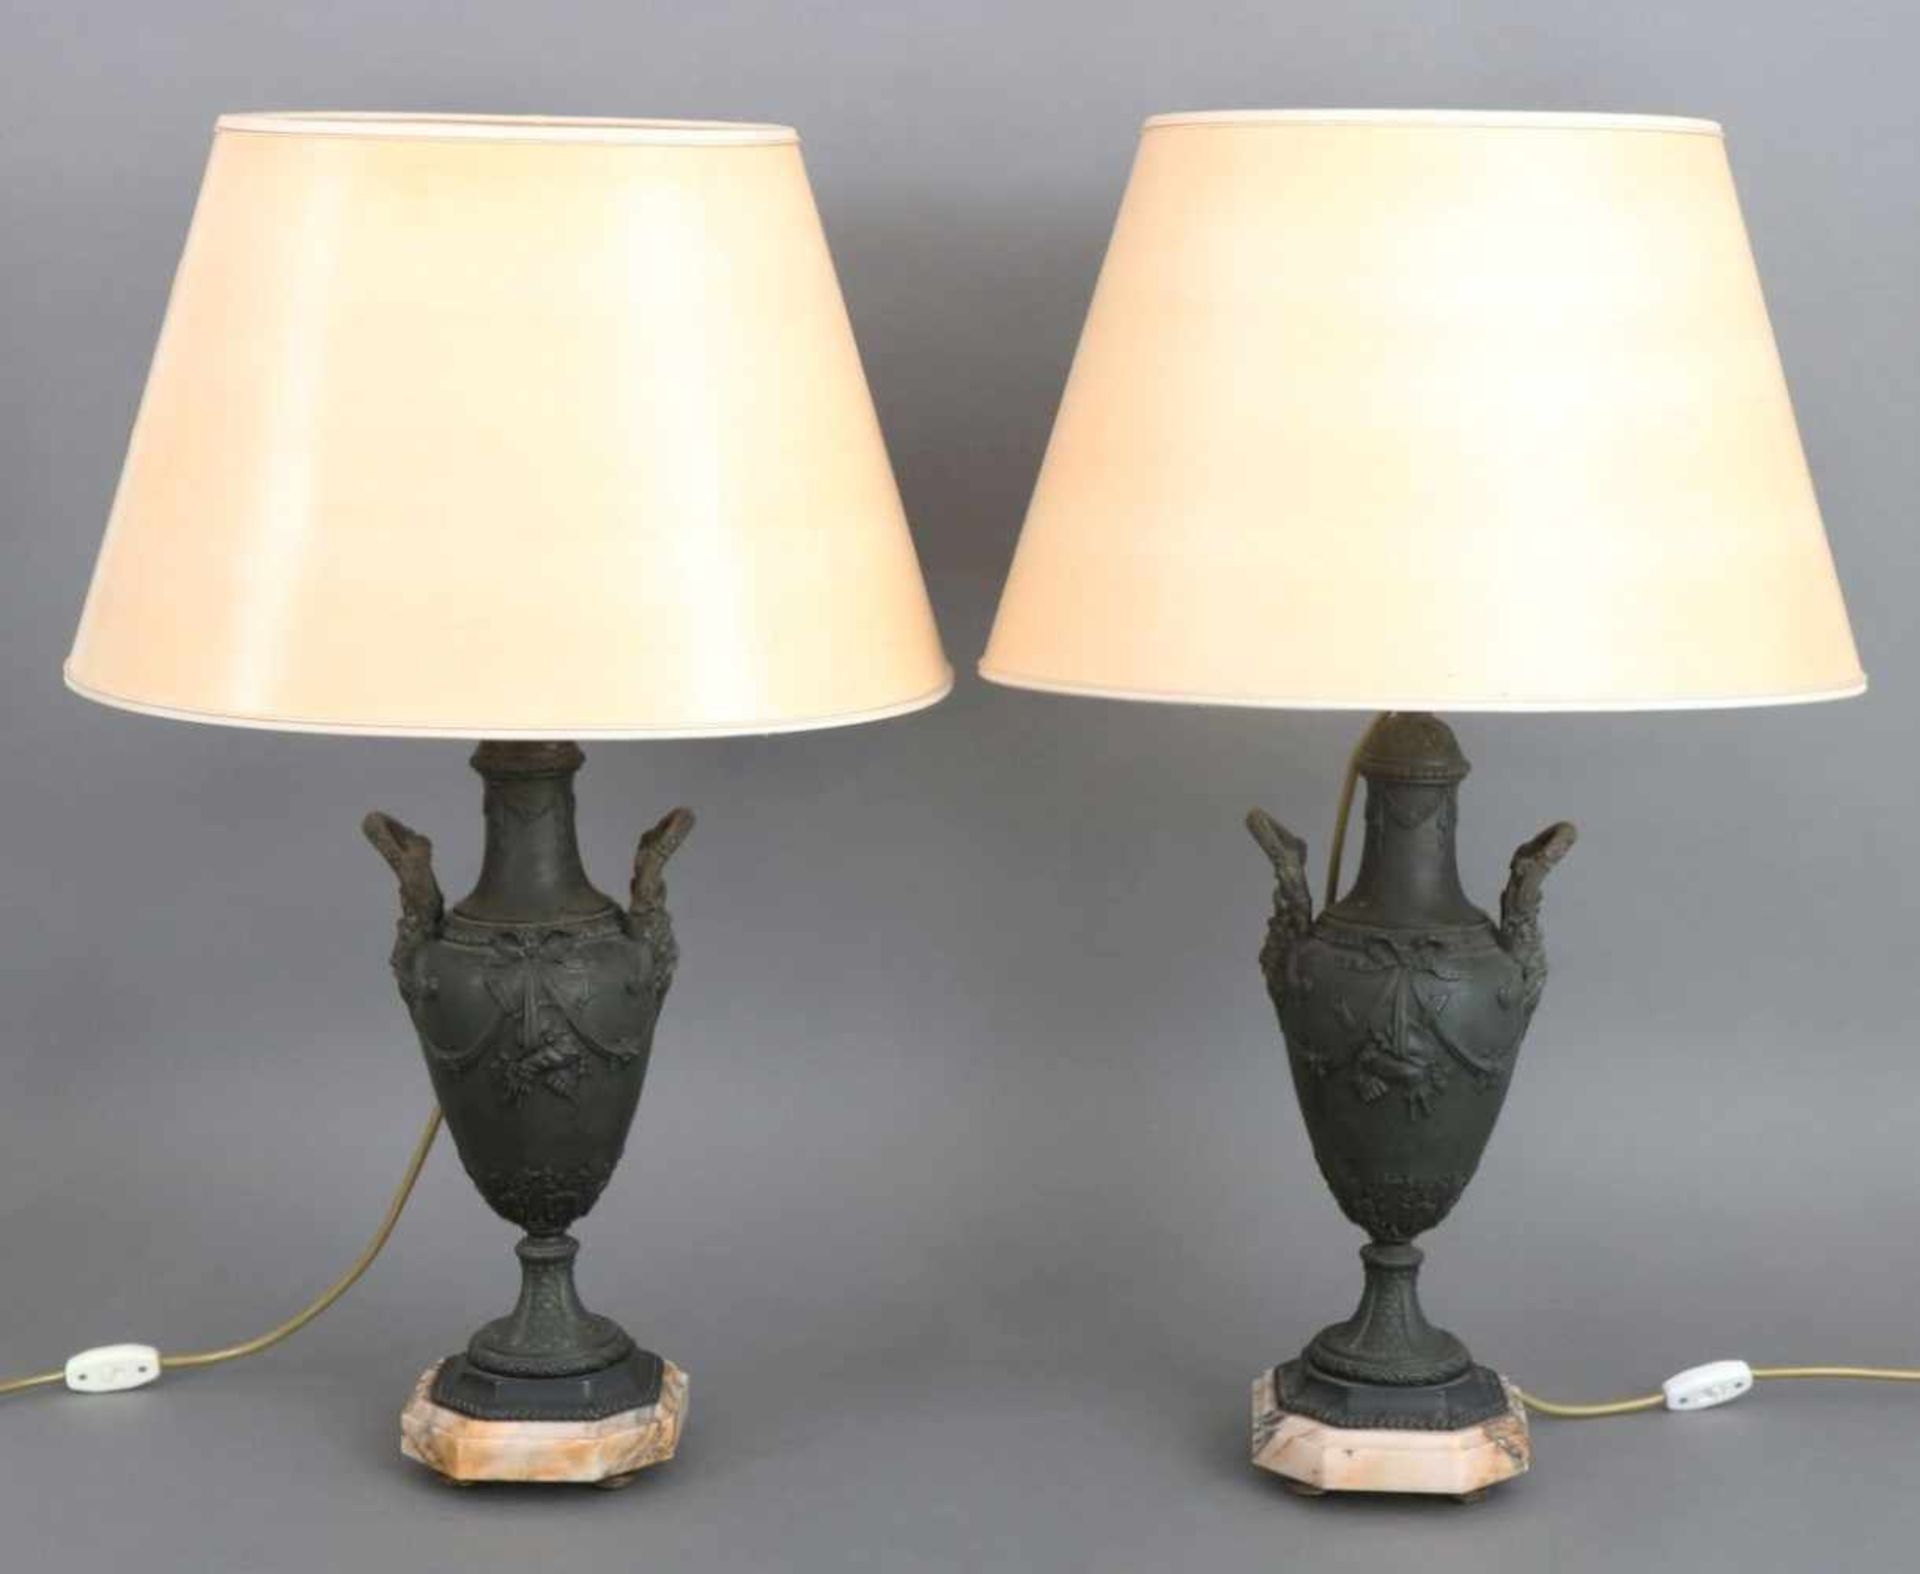 Paar TischlampenFüße in Form von ¨Empire¨-Vasengefäßen mit historisierendem Dekor, Zinkguss,